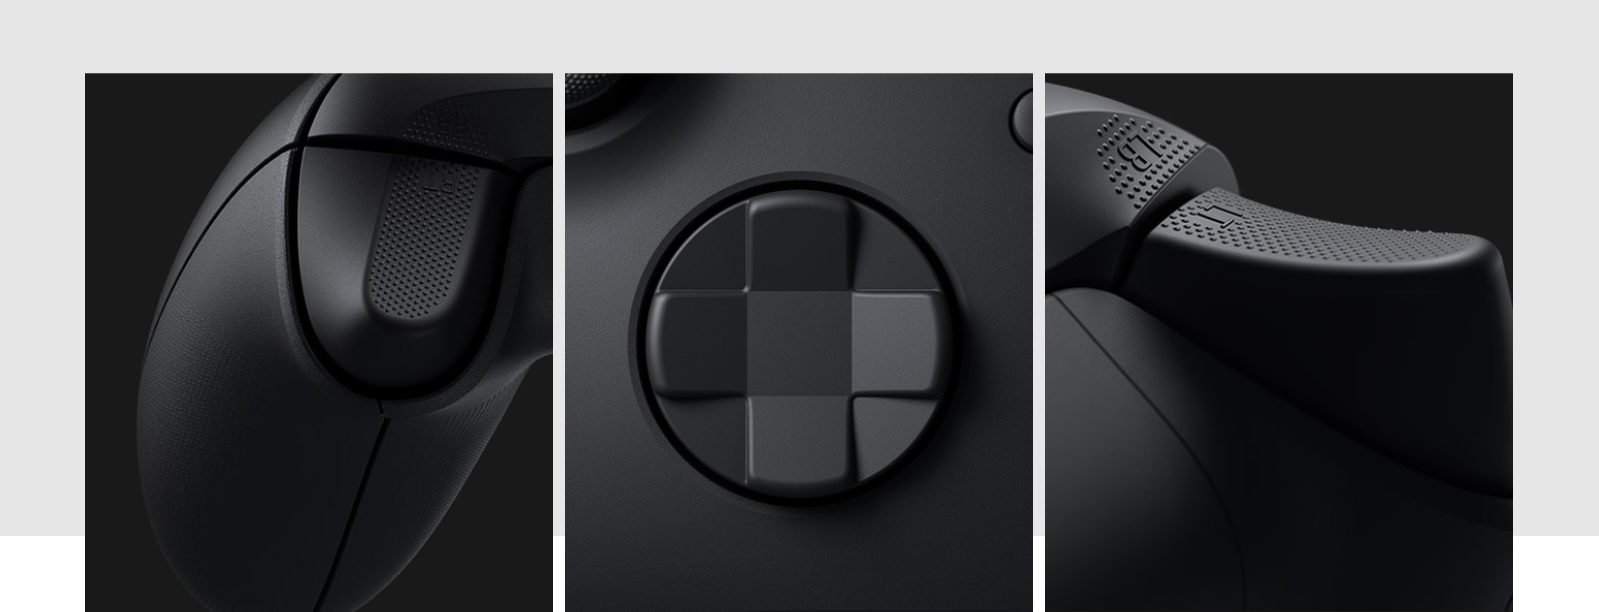 Tay cầm chơi game Xbox Series X Controller - Carbon Black có thiết kế cụm D-pad hoàn toàn mới